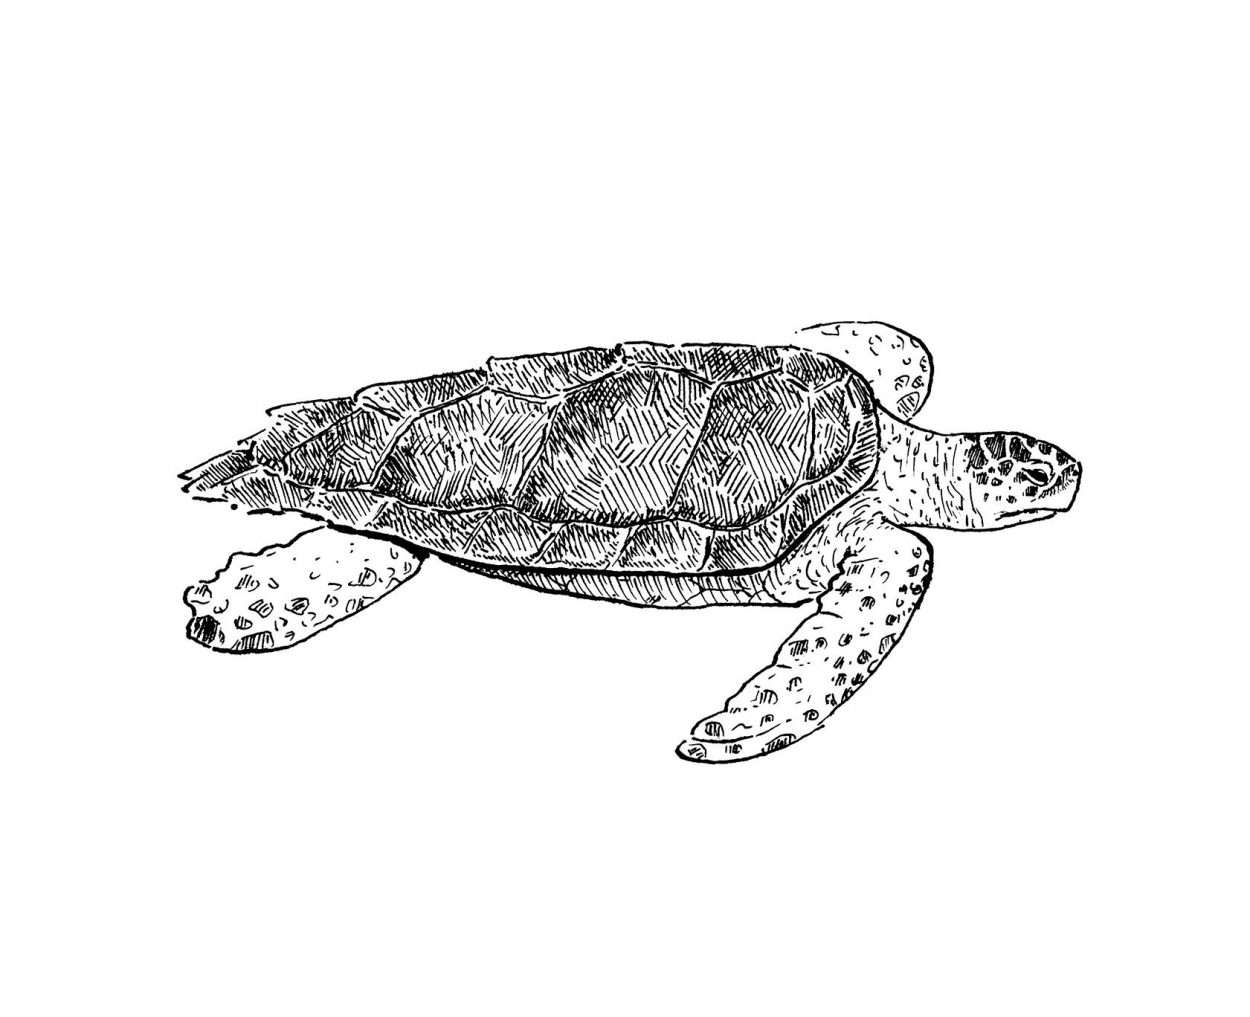 Ilustración en blanco y negro de la tortuga boba del mediterrano. Tinta sobre papel. Dibujos naturaleza y animales marinos